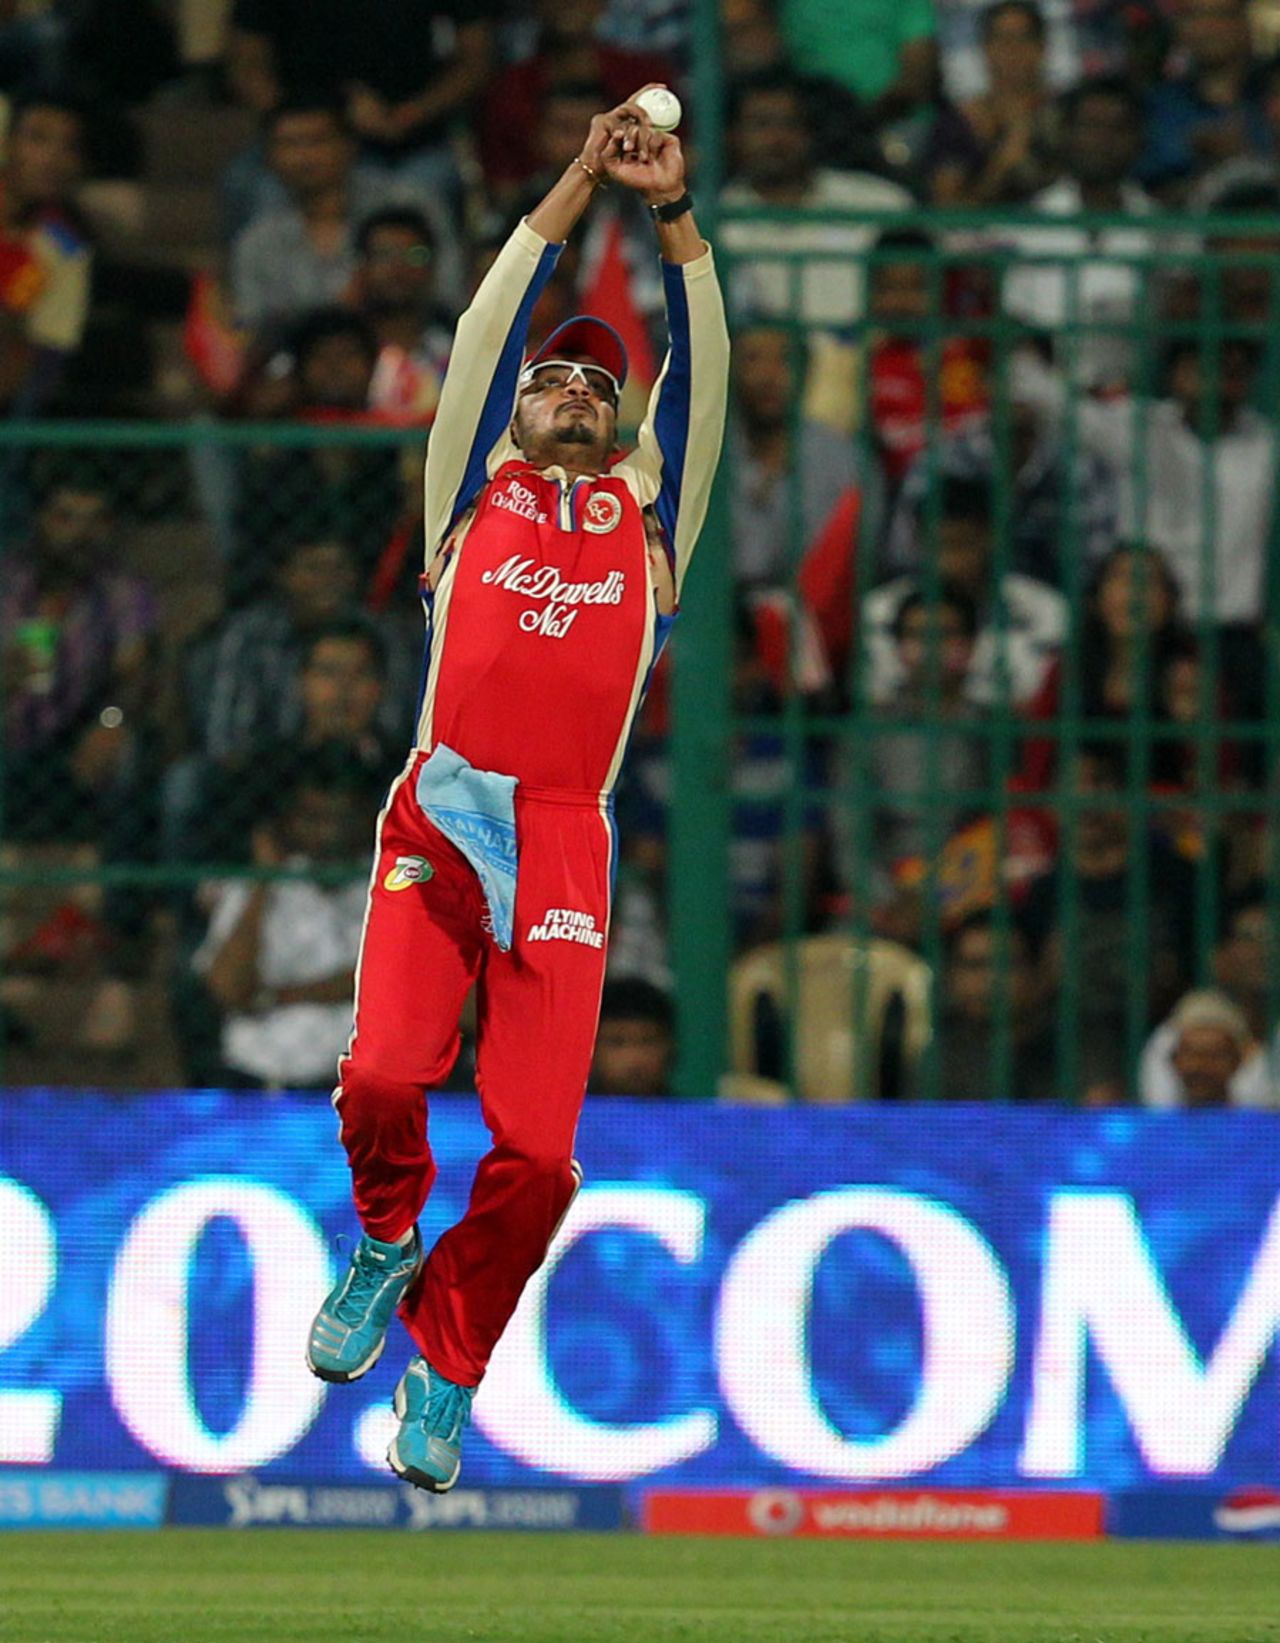 Murali Kartik leaps to take the catch that dismissed Shane Watson, Royal Challengers Bangalore v Rajasthan Royals, IPL 2013, Bangalore, April 20, 2013